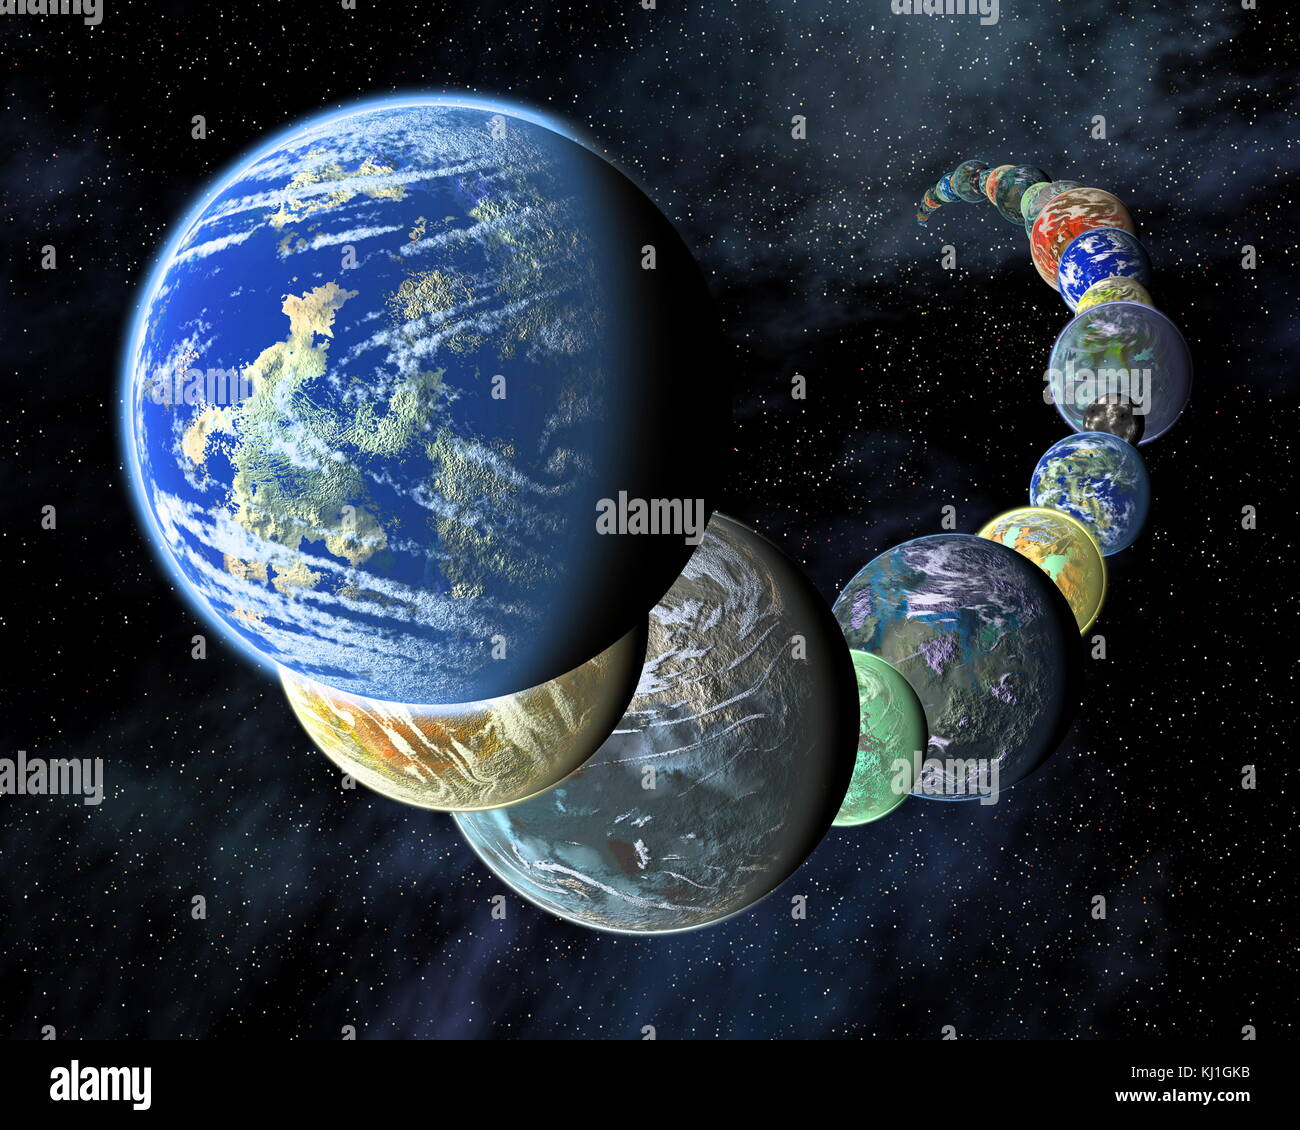 Exo-planètes dans un montage, concept de l'artiste de montrer que rocky, mondes terrestres comme les planètes de notre système solaire, peut être abondant et diversifié, dans l'Univers. Banque D'Images